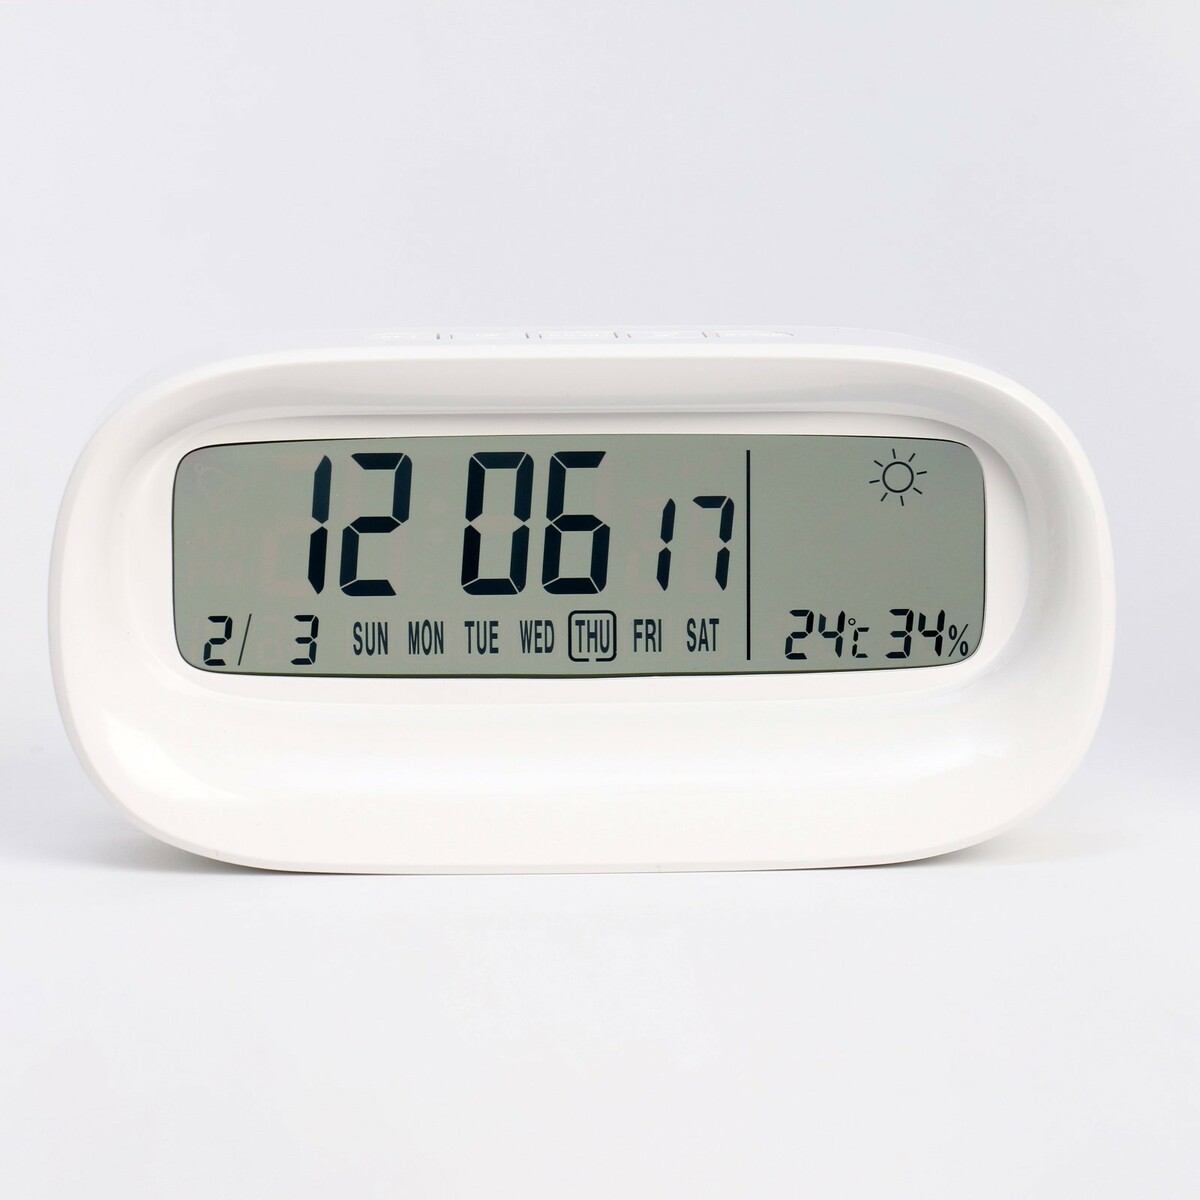 Часы - будильник электронные настольные c термометром, гигрометром, 7 х 14.5 см, 2ааа часы с термометром kitfort кт 3303 1